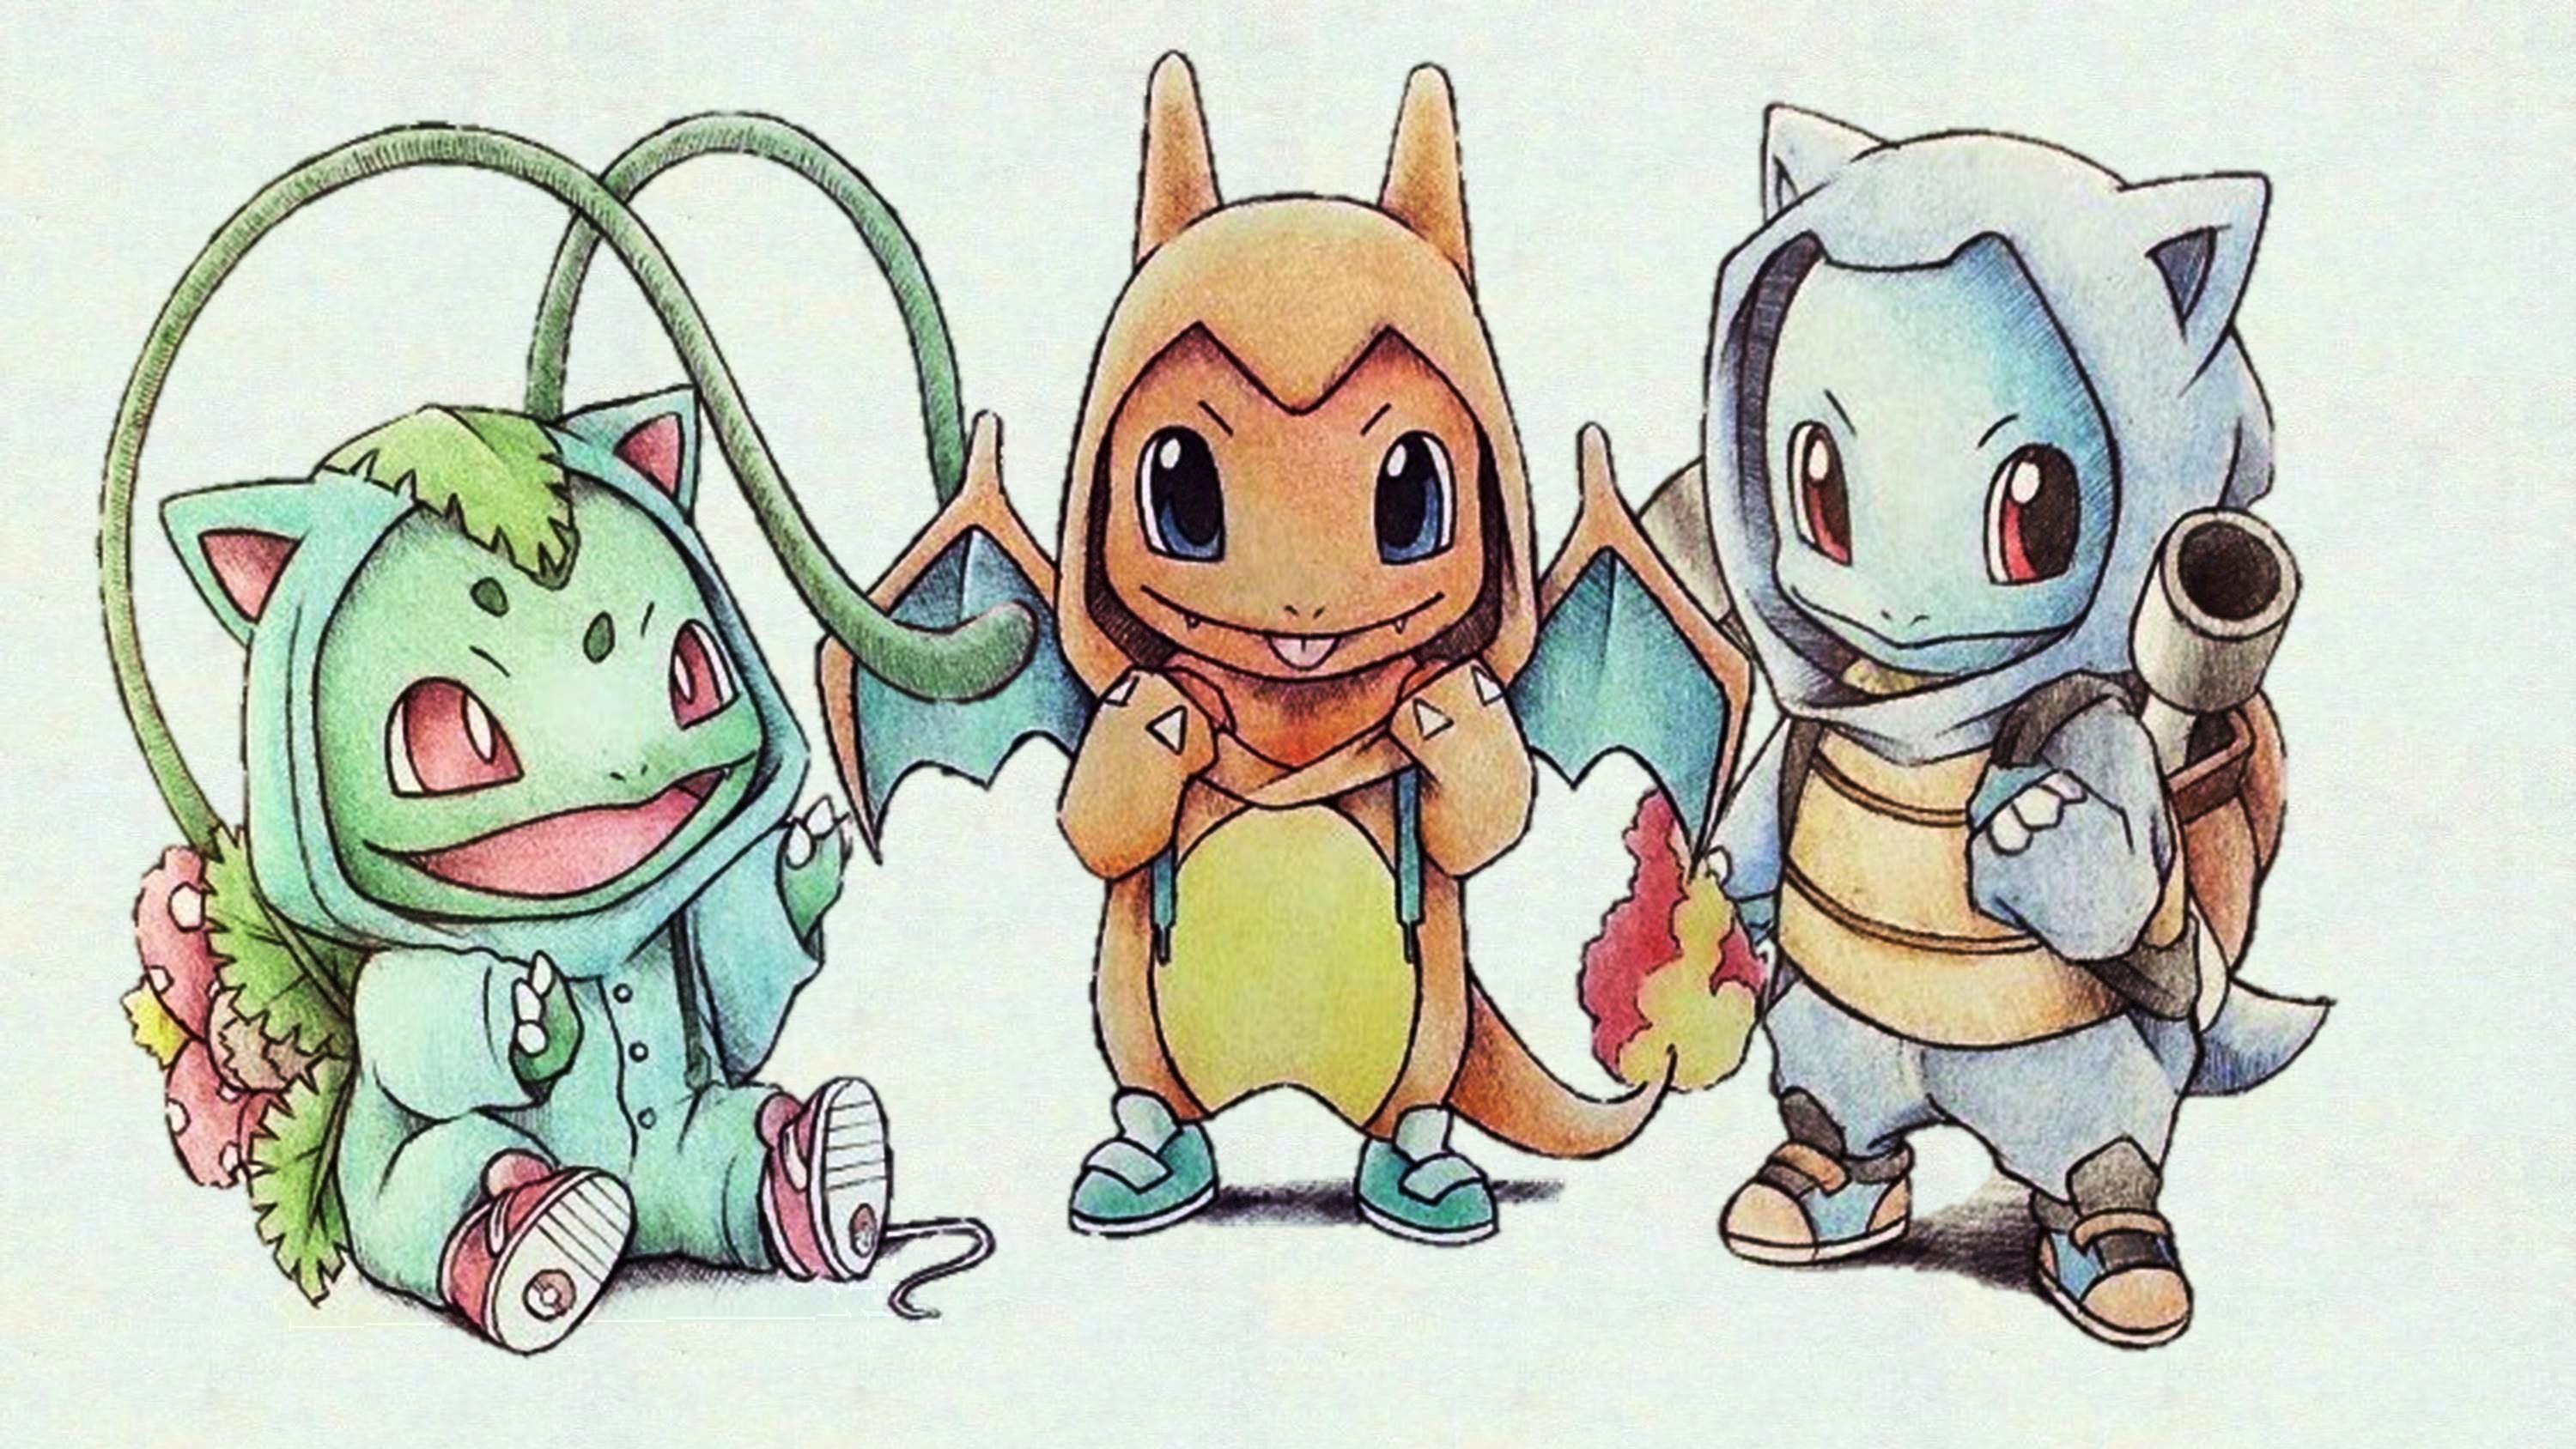 Cute Pokemon Wallpapers